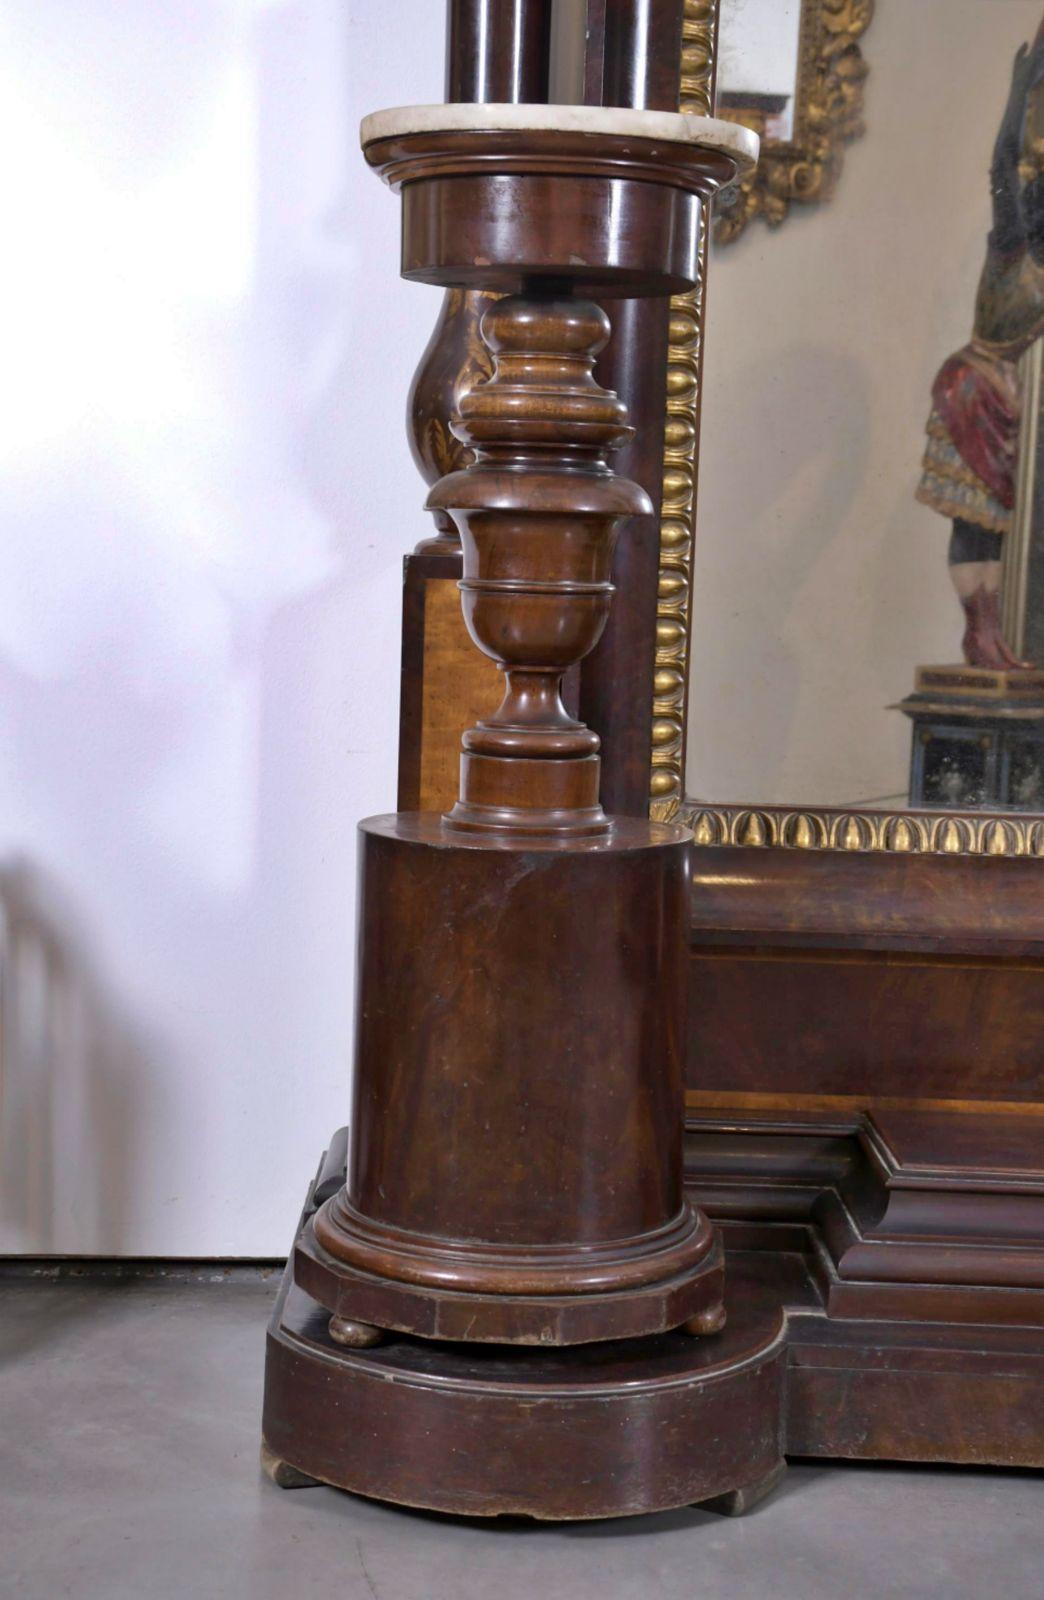 ESPAGNOL TREMÓ REGENCY
MARIA CRISTINA AVEC PAIRE DE BASES, CIRCA 1840 19ème siècle

Avec un cimier surmonté d'une sculpture en or avec un motif allégorique de la naissance de Vénus.
En bois d'acajou, sculpté, tourné et doré. Whiting avec deux bases